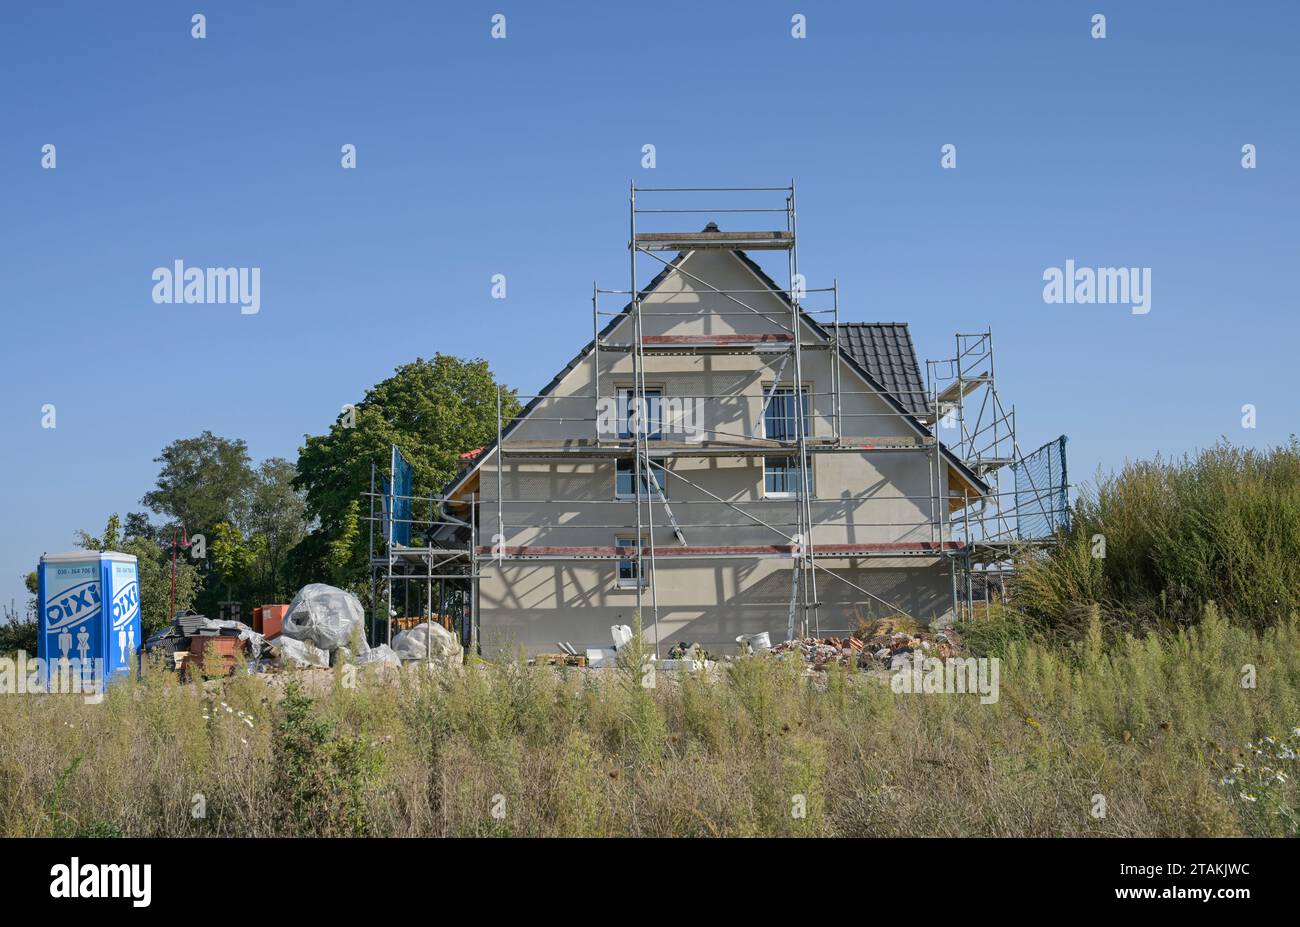 Baustelle, Neubau Einfamilienhaus, Neubaugebiet am Rüggen Ost, Melchow am Rügen, Brandeburgo, Deutschland Foto Stock